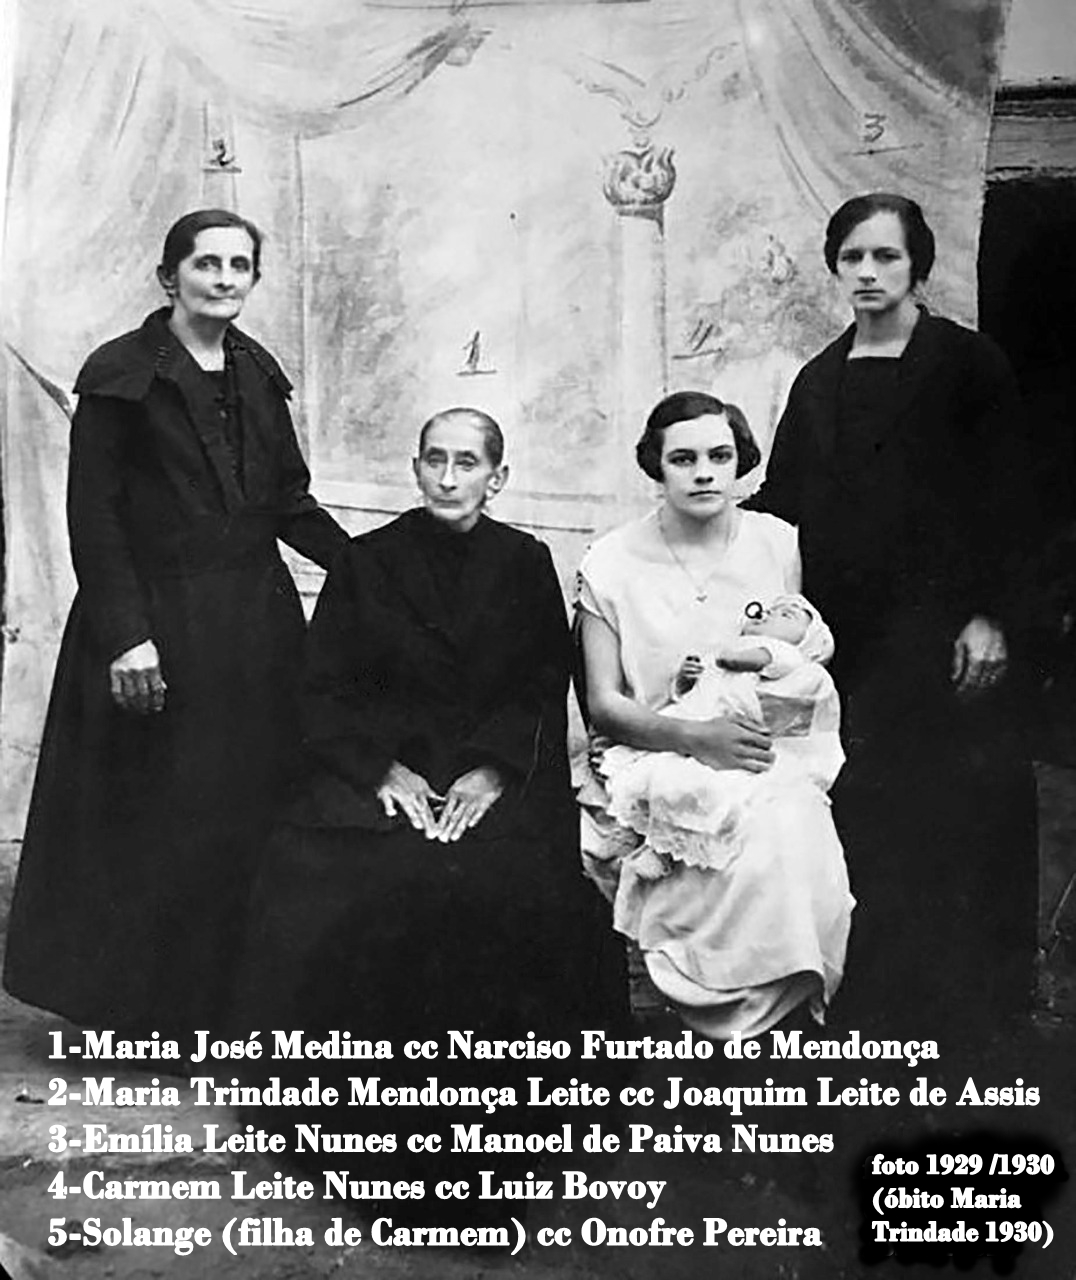 foto tirada mais ou menos em 1929, pois Maria da Trindade faleceu em abril de 1930, e o bebe que est no colo aparenta uns 4/5 meses